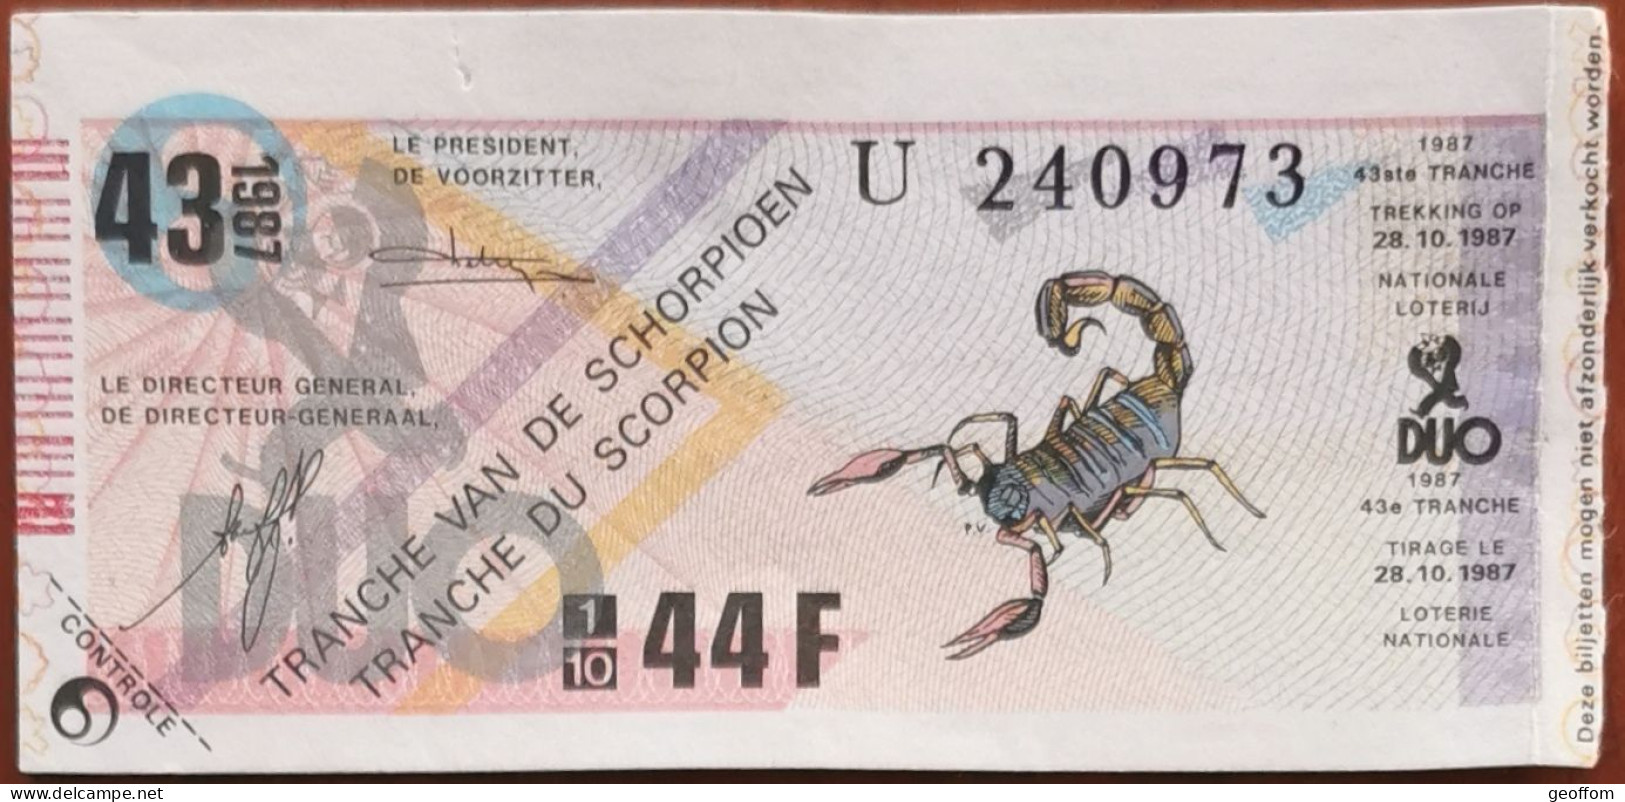 Billet De Loterie Nationale Belgique 1987 43e Tranche Du Scorpion - 28-10-1987 - Billetes De Lotería